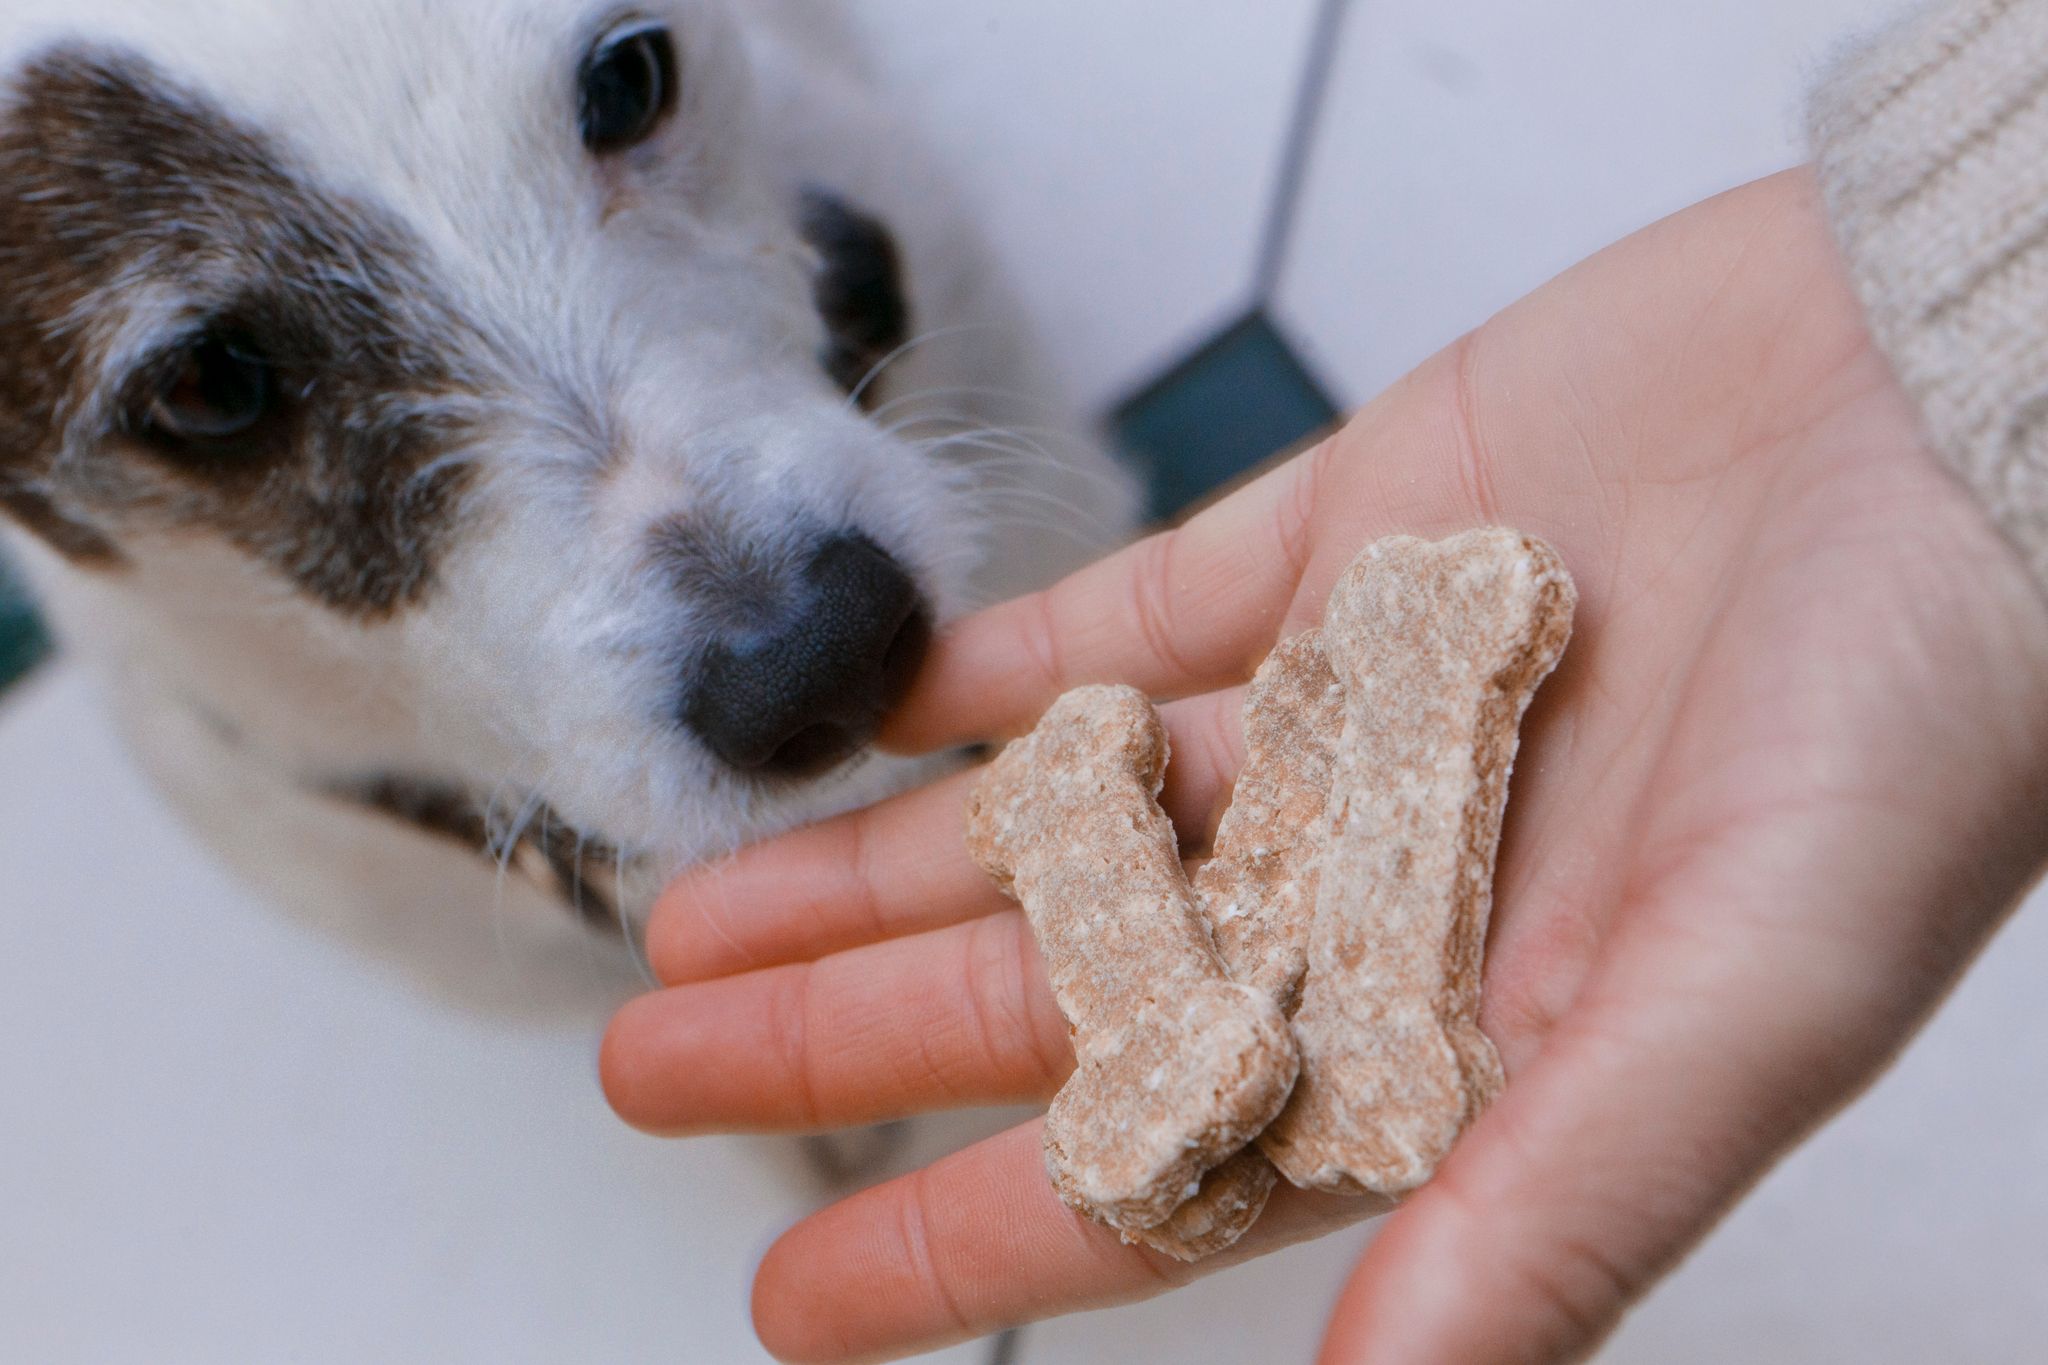 ILUSTRACIÓN - Alimentar al perro solo de la mano puede ser una estrategia para desactivar la conducta agresiva del animal a la hora de comer. (Markus Scholz/dpa)